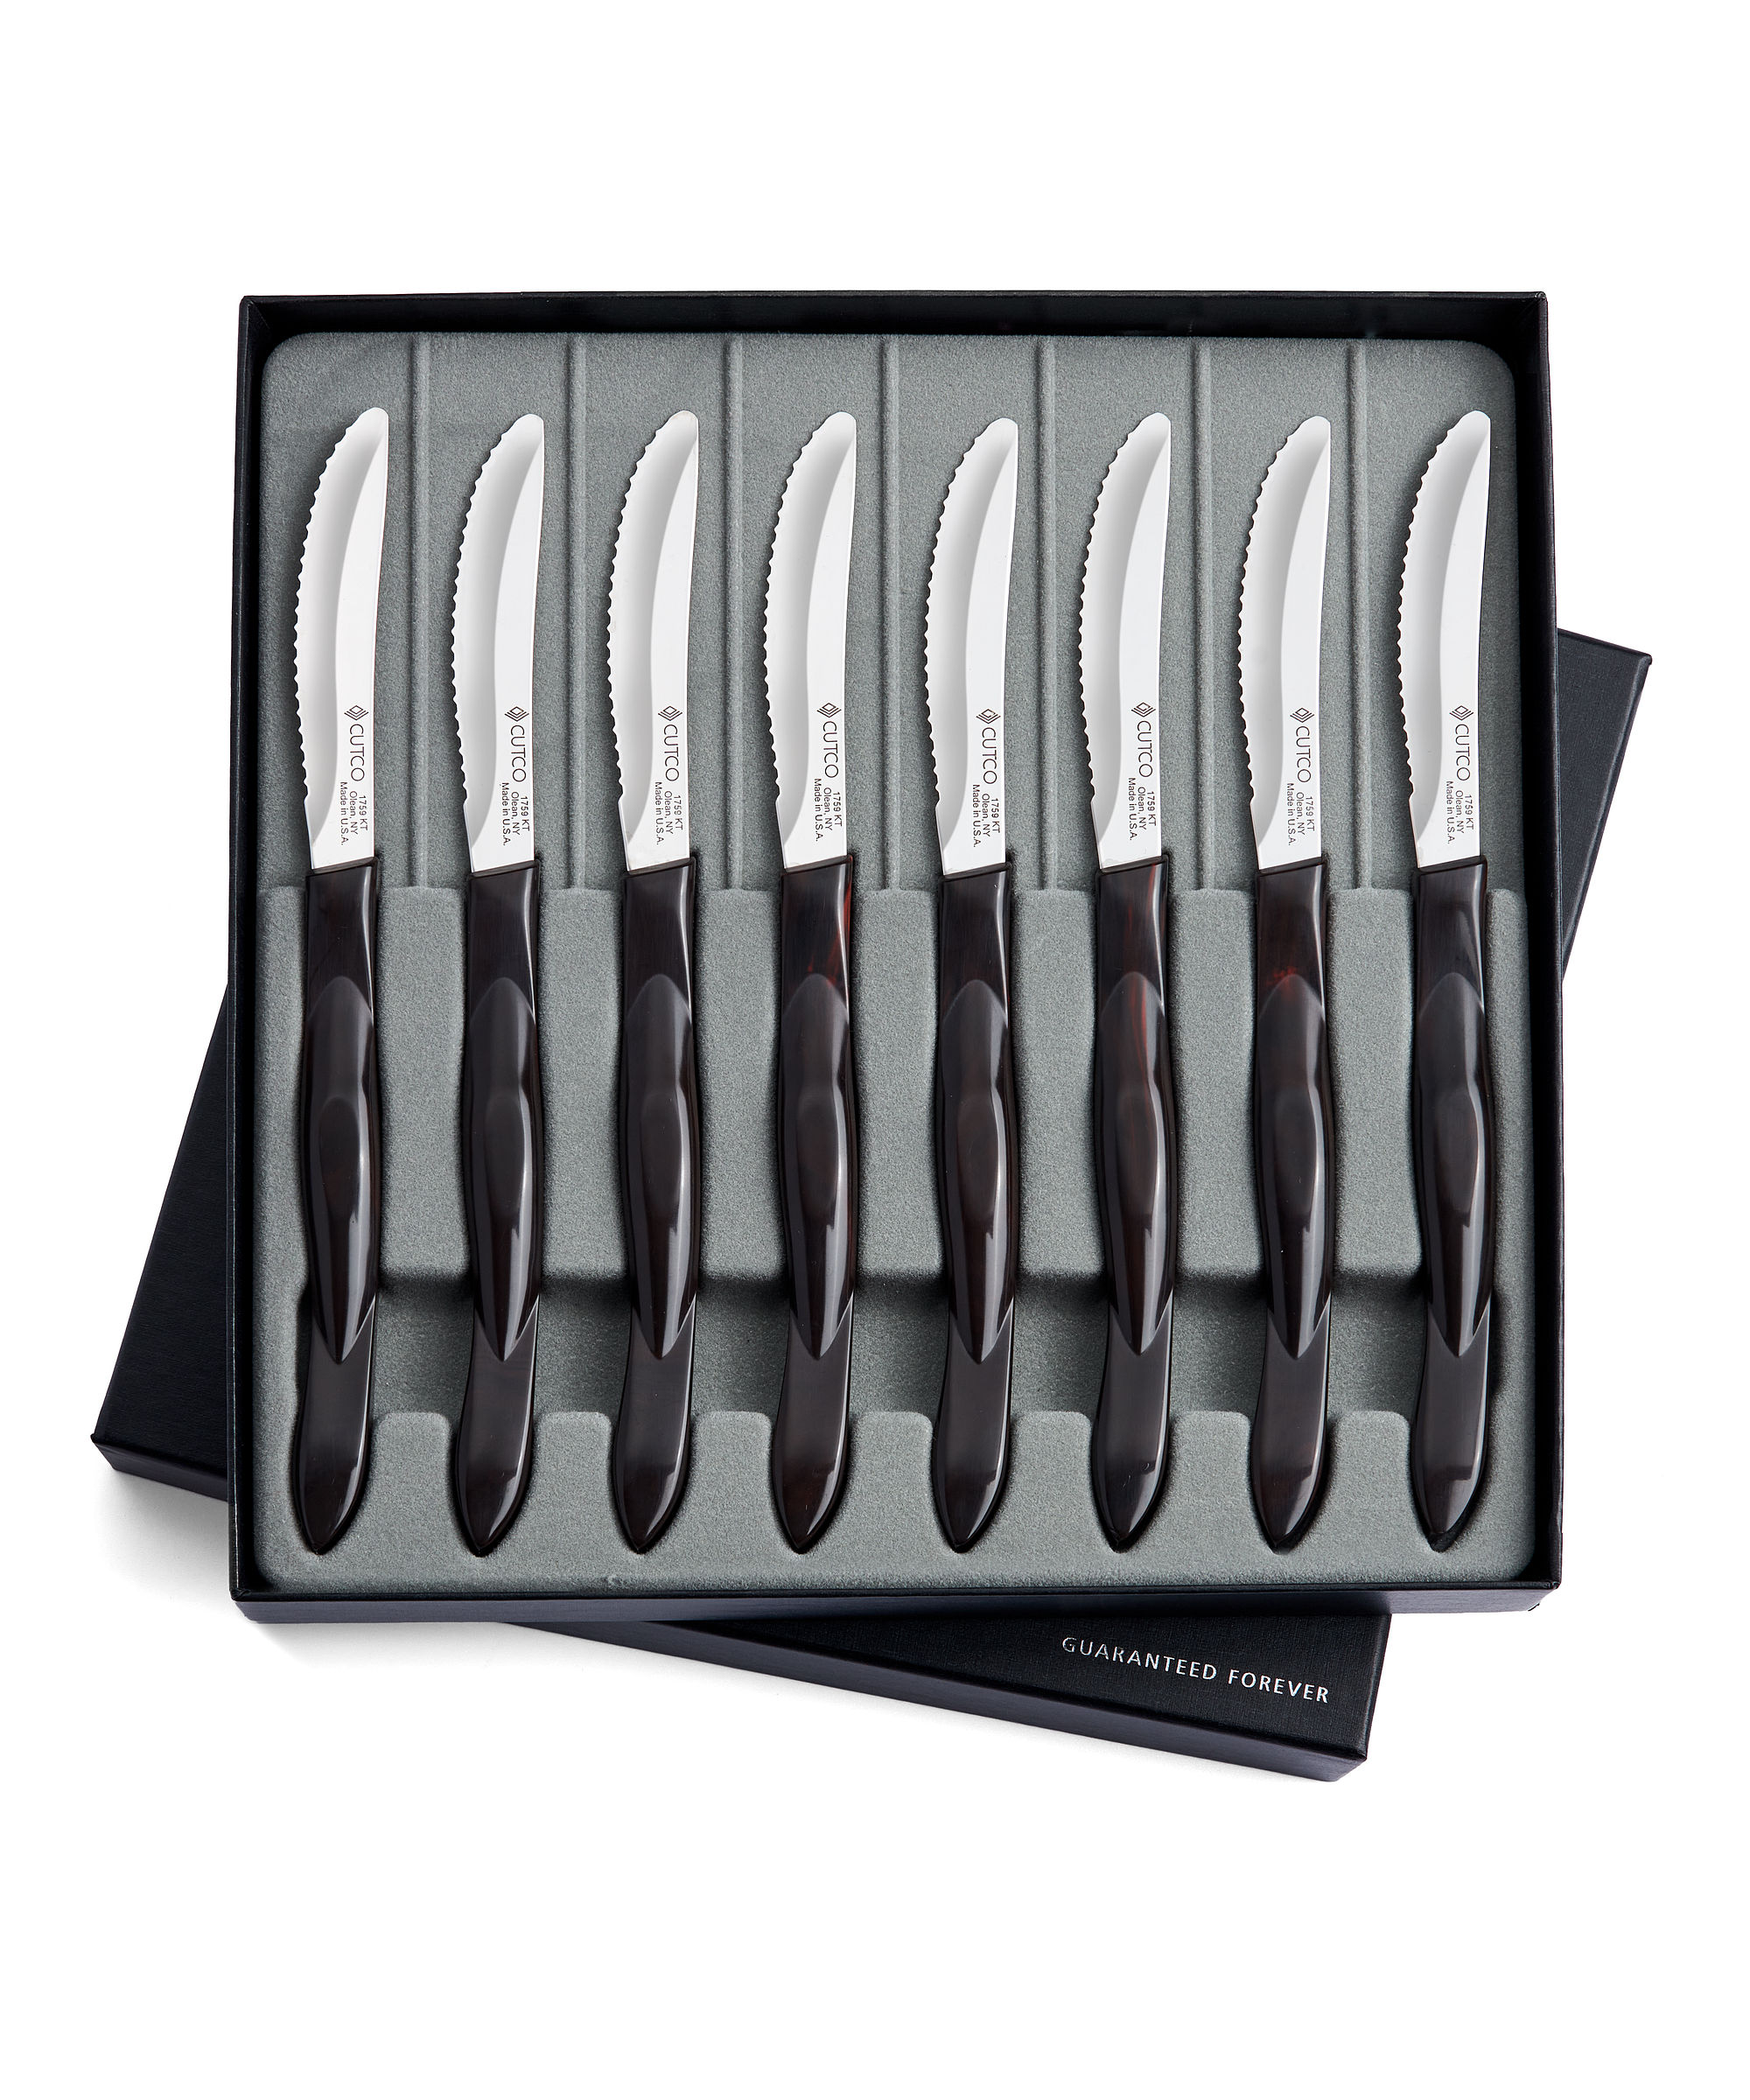 Set of Cutco Steak Knives, 8 Knives and Box, No. 1058 